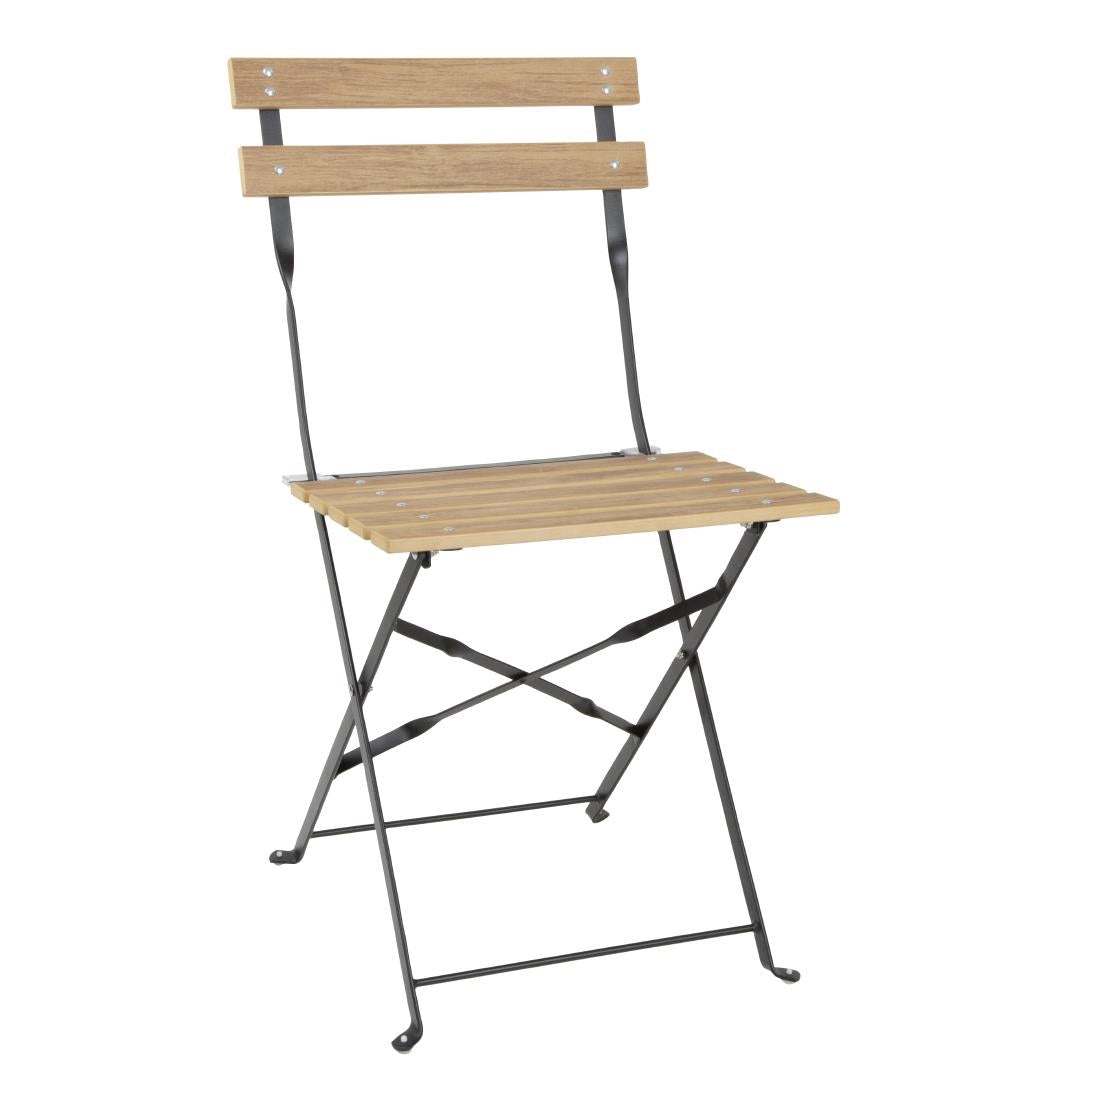 FU539 Bolero Perth Pavement Style Folding Chairs Wood Effect (Pack of 2)